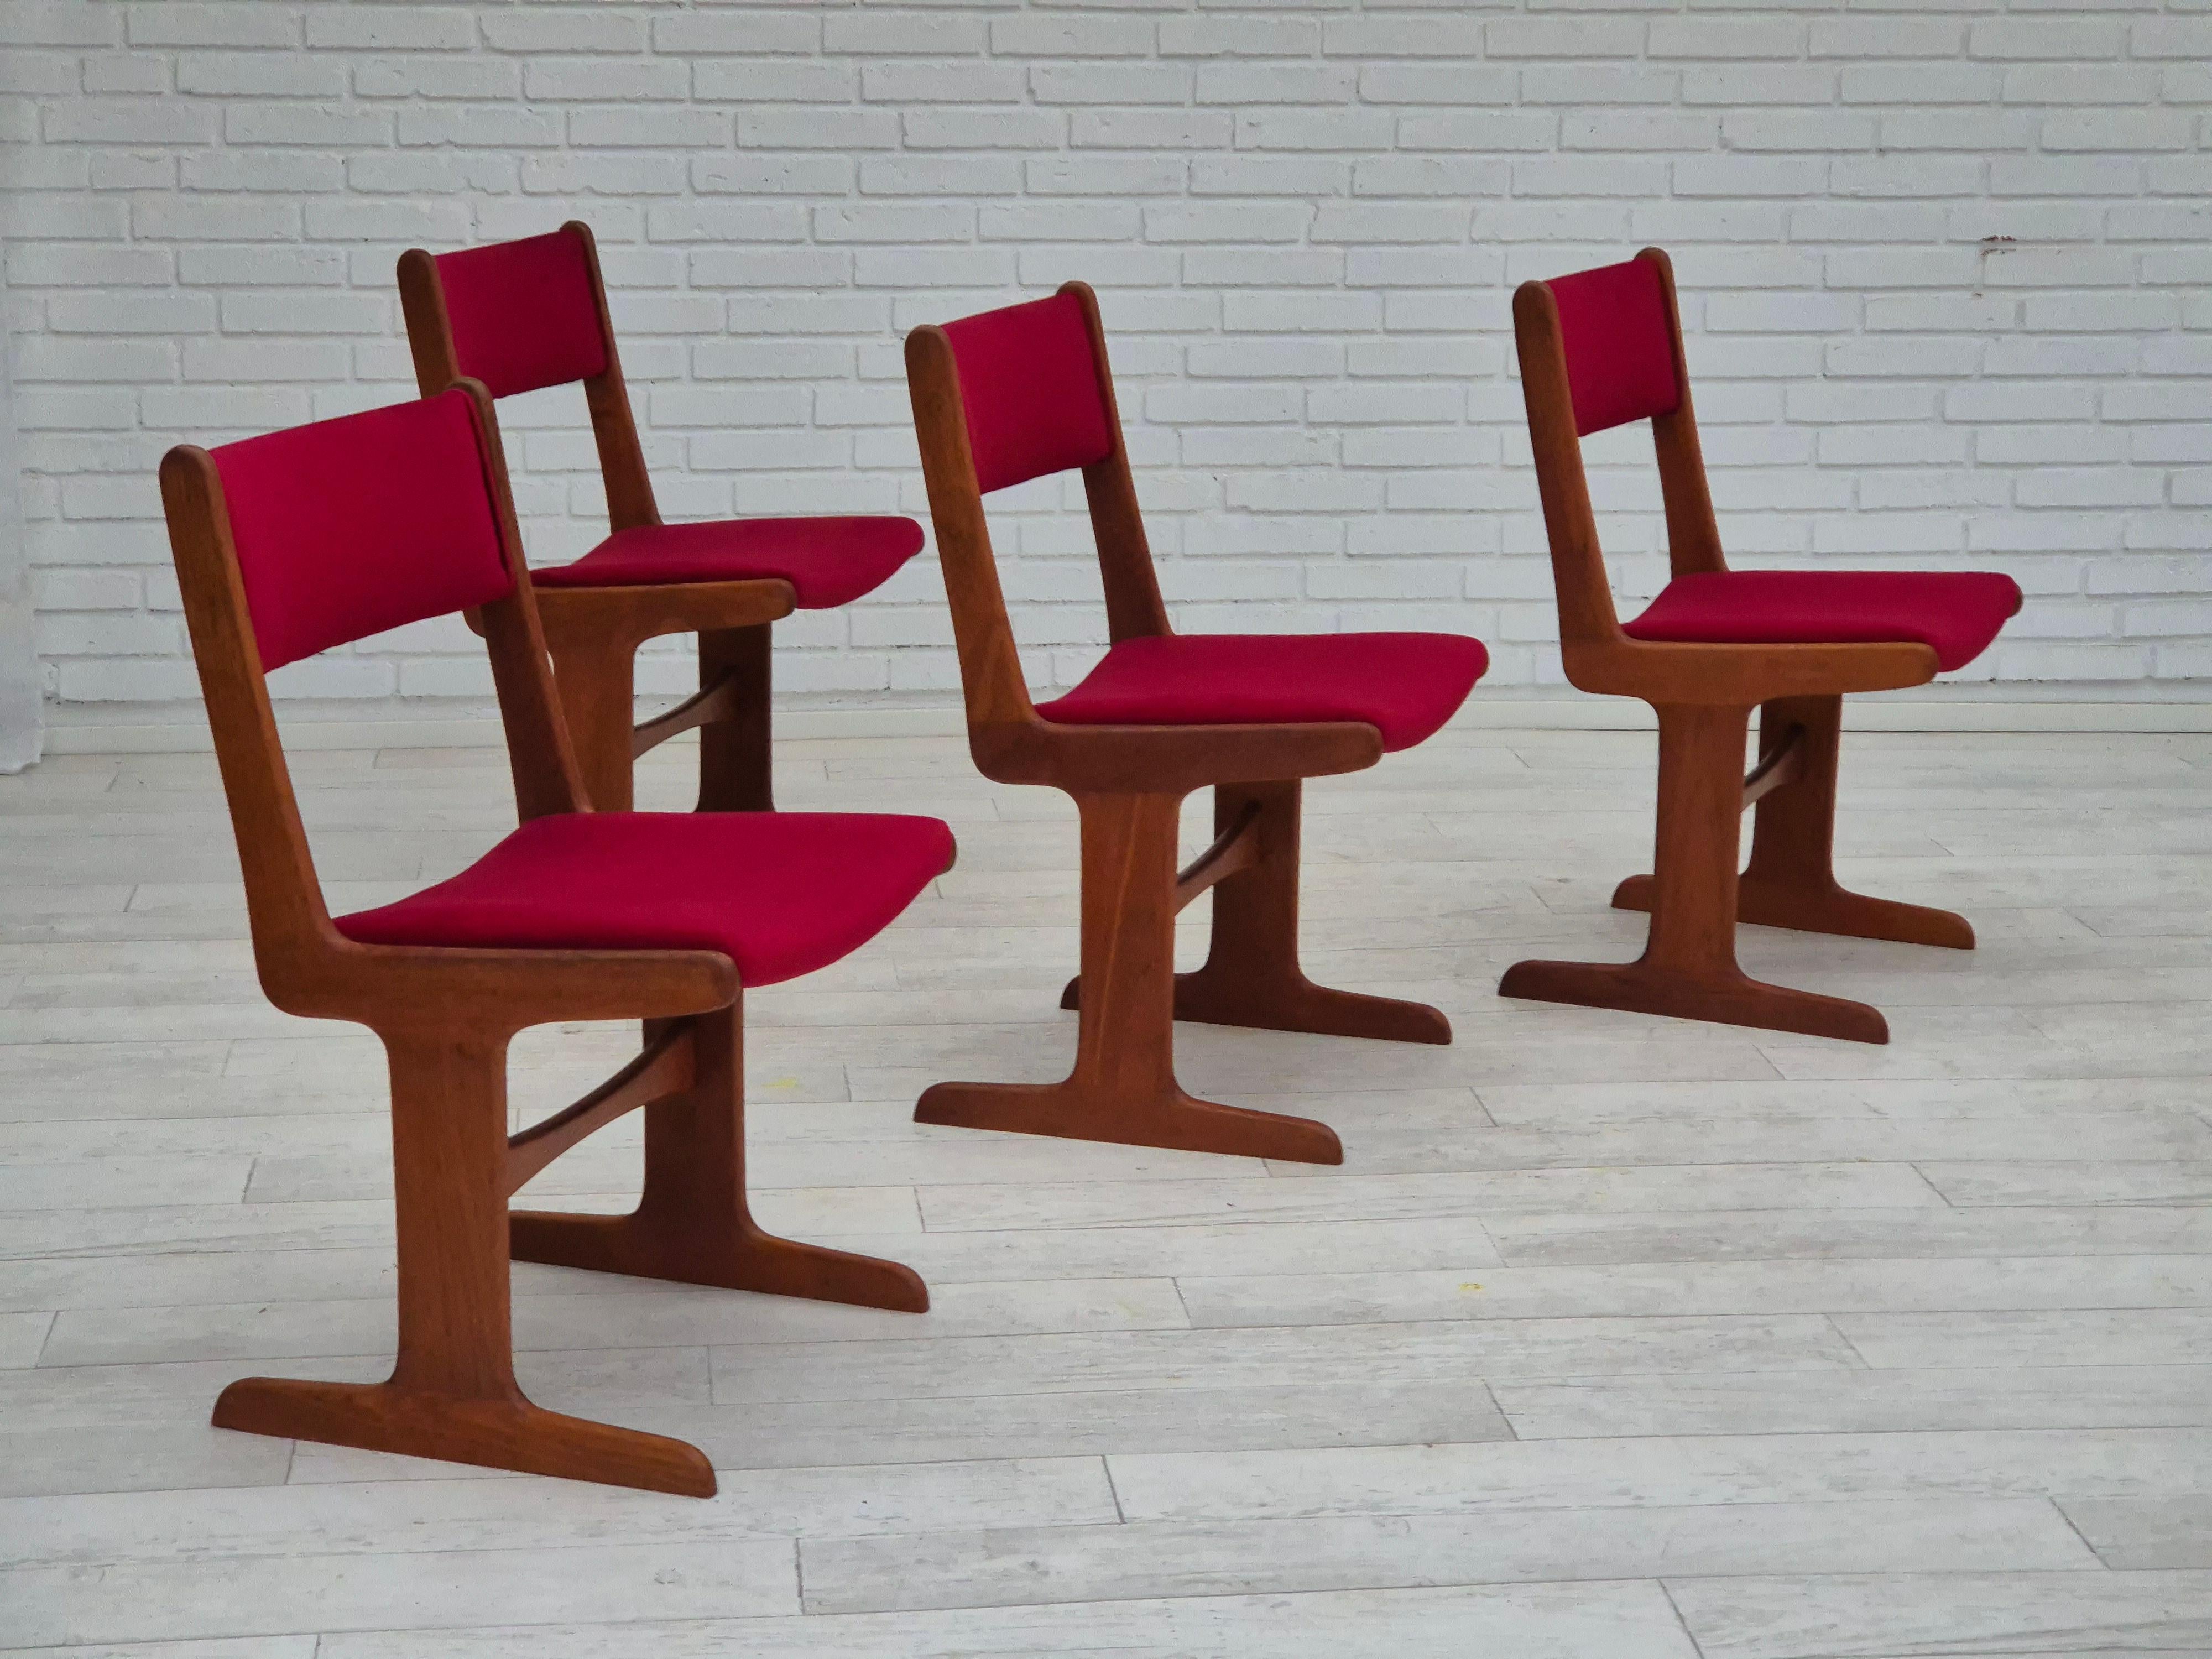 1970, ensemble de 4 chaises danoises rembourrées. Bois de teck rénové, velours d'ameublement rouge cerise. Fabriqué par le fabricant de meubles danois Farsø Møbelfabrik vers 1970. Rembourré par un artisan.